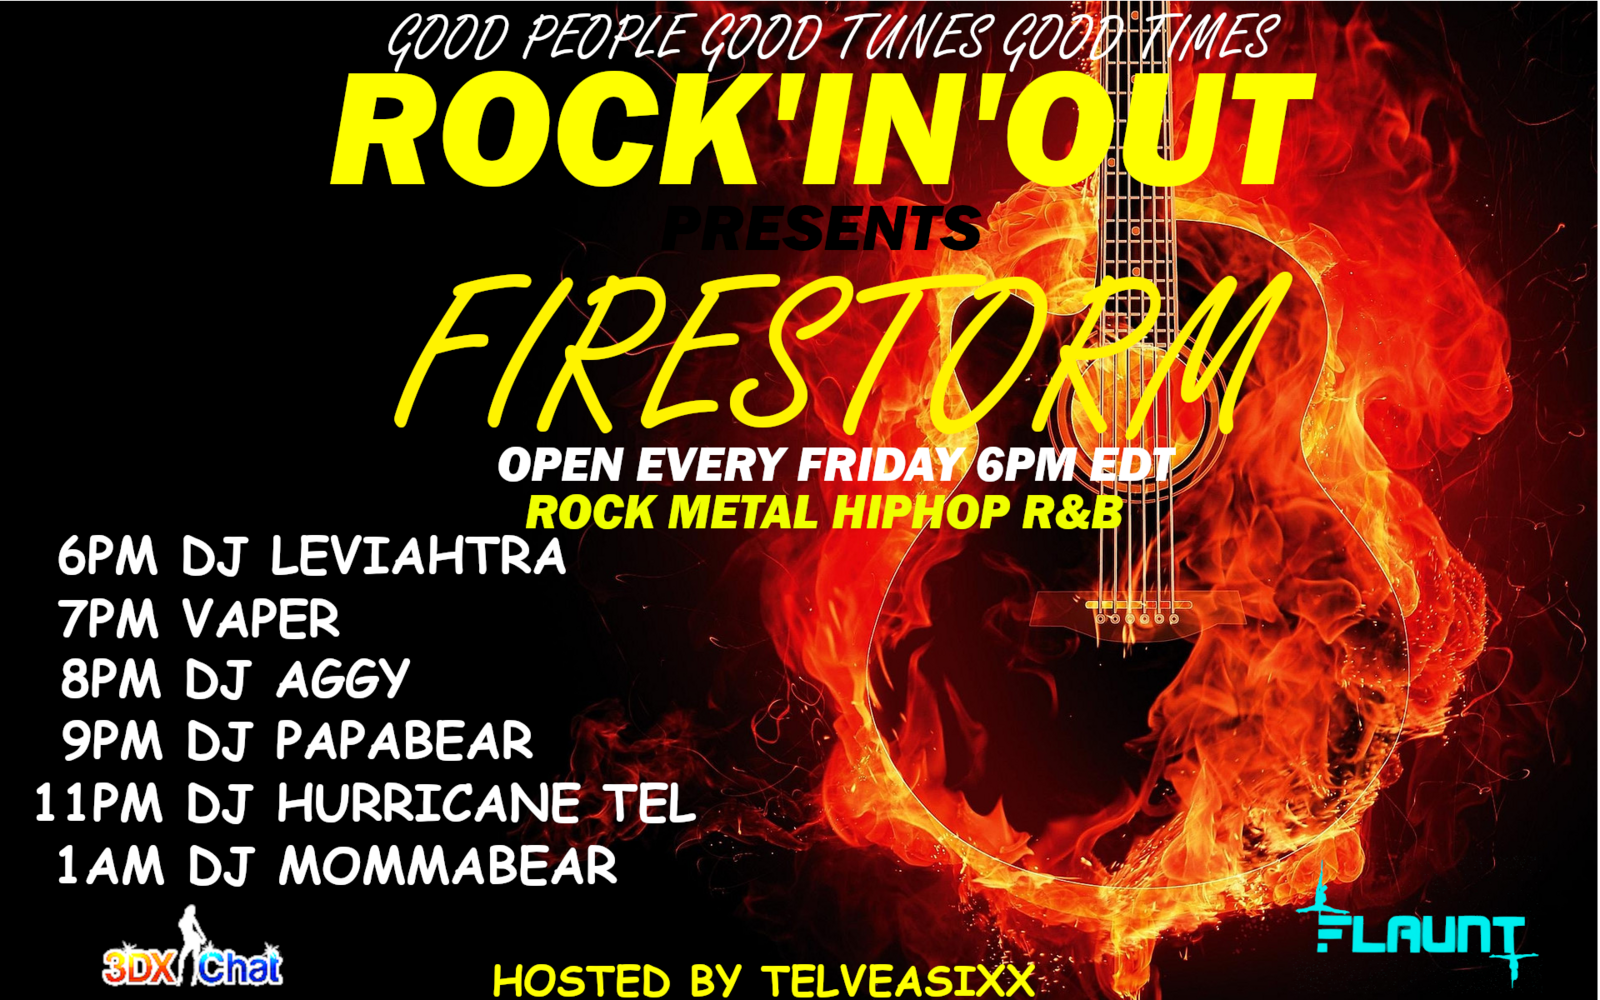 firestorm_poster2.png